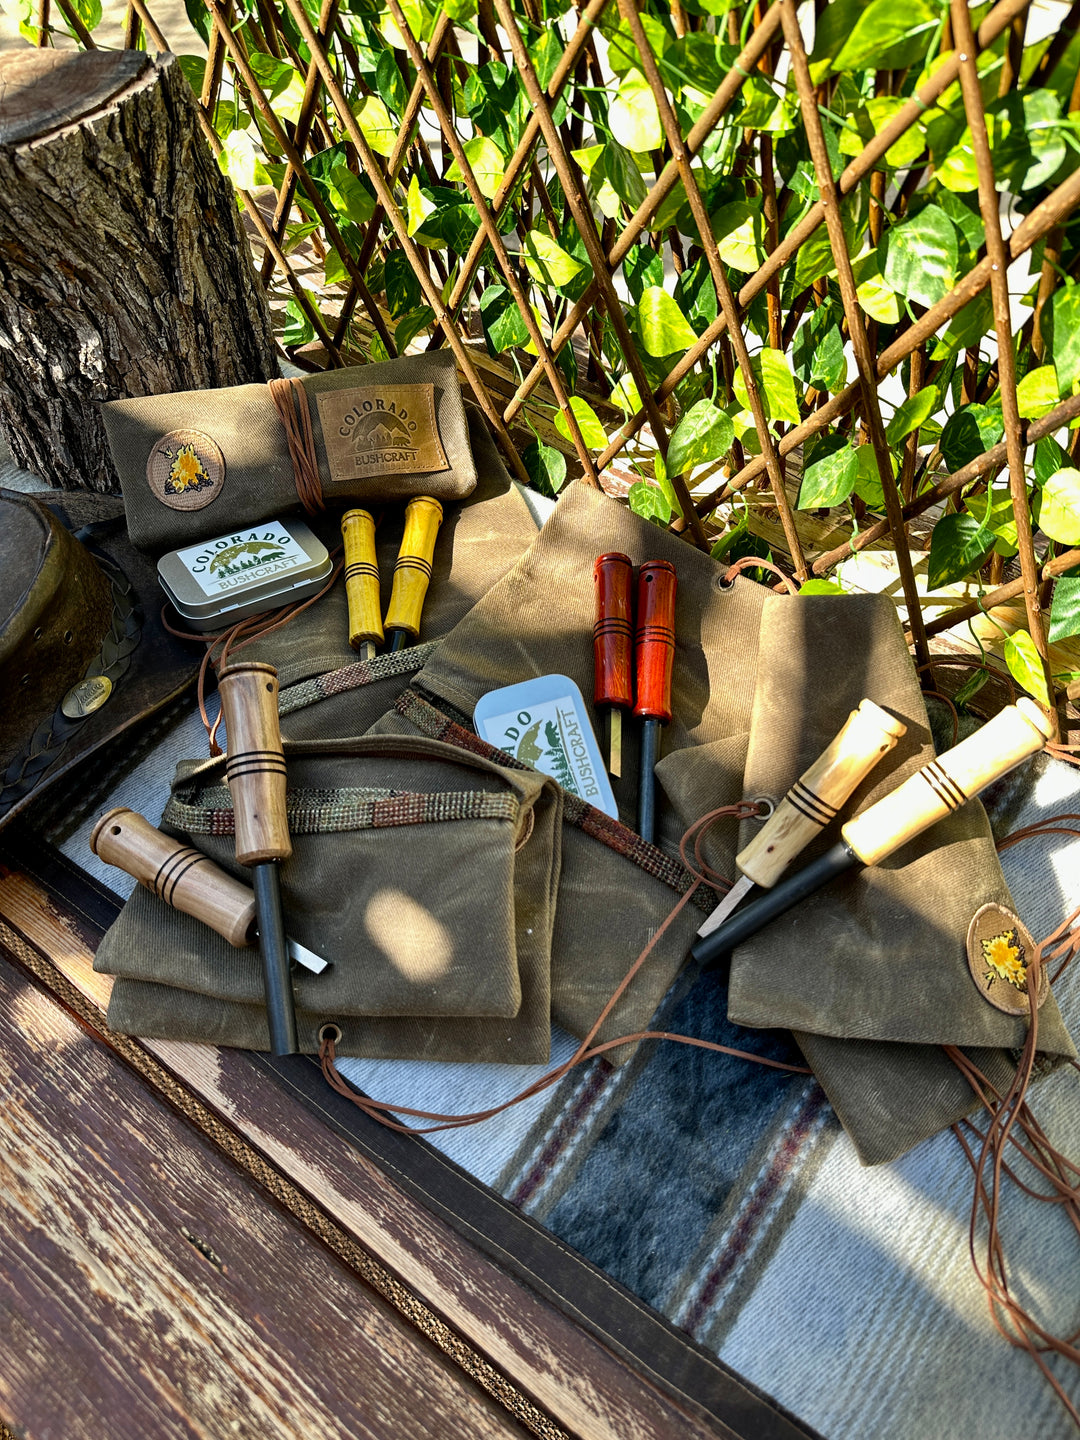 Tools – Colorado Bushcraft